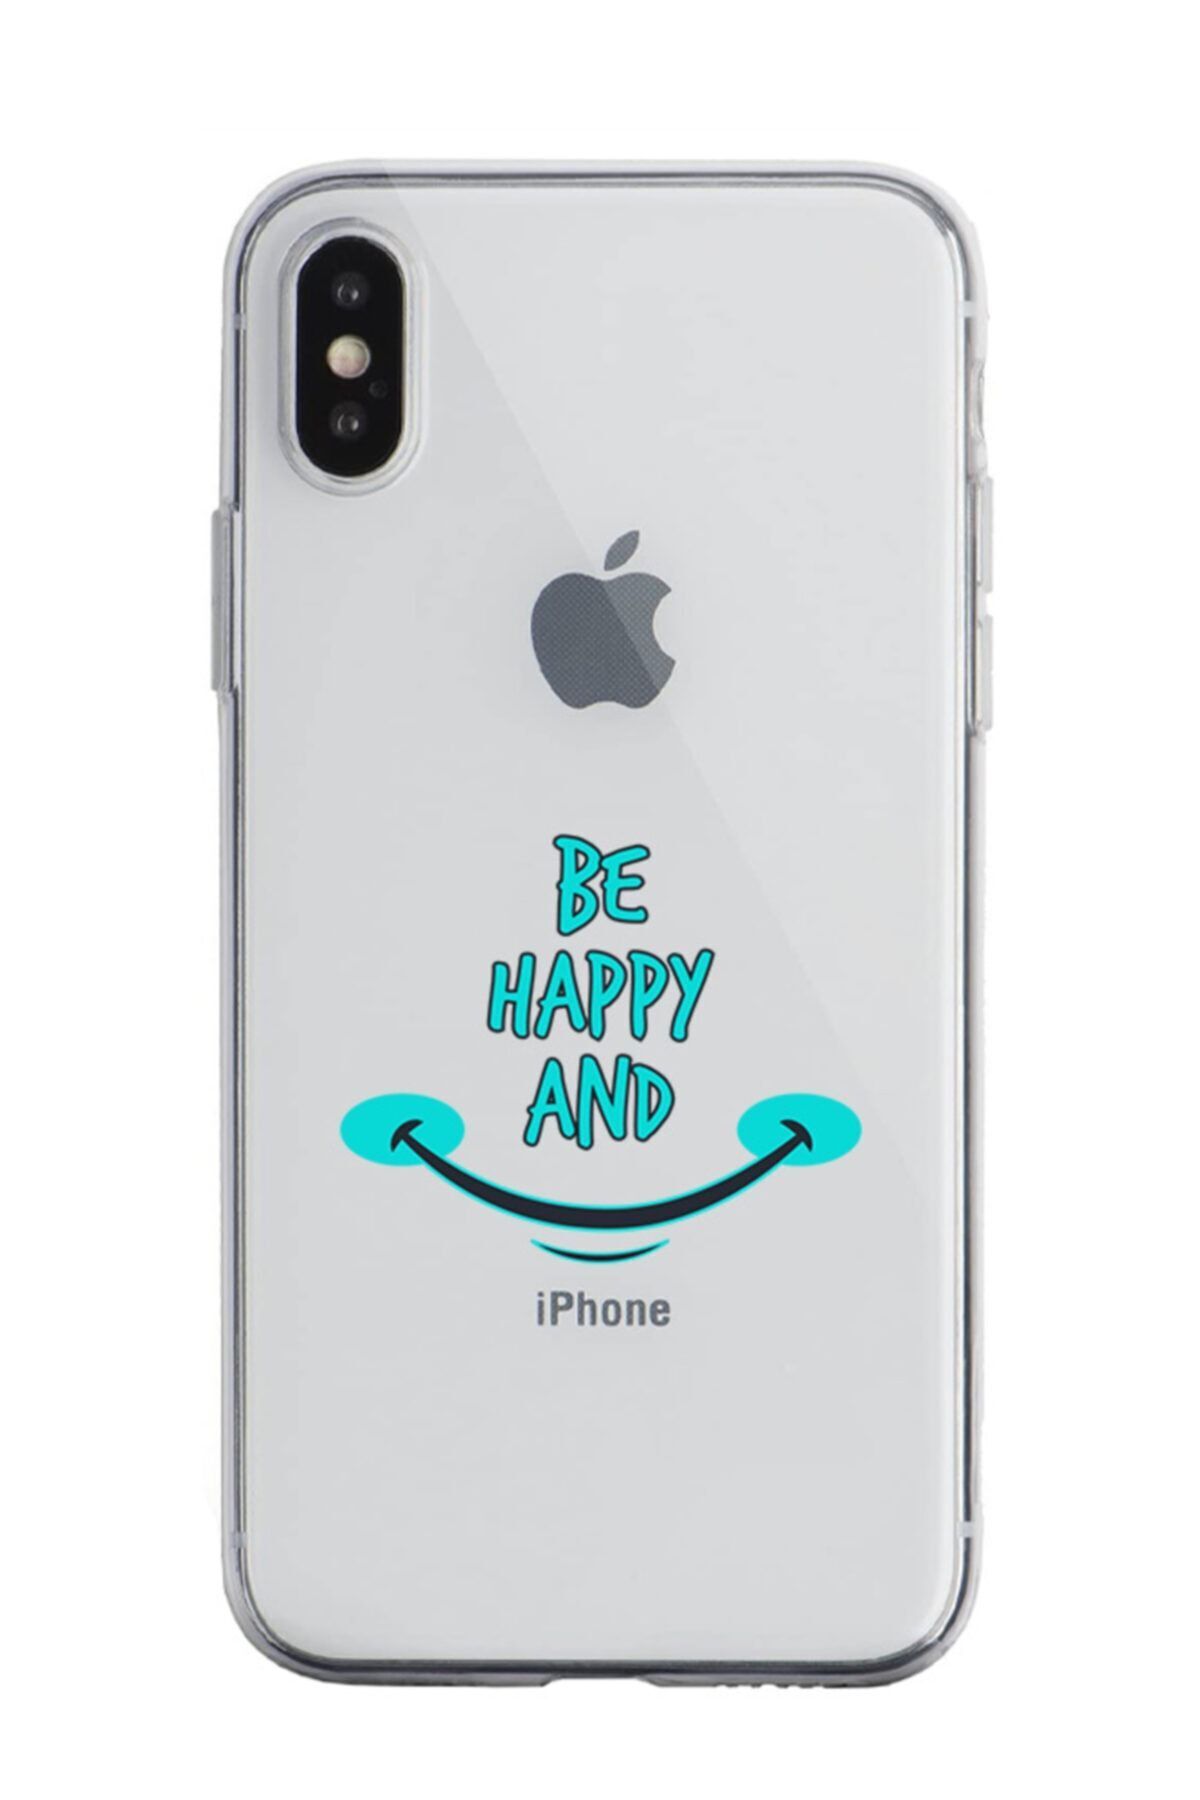 Dafhi Aksesuar Dafhi Apple Iphone Xs Be Happy And Telefon Kılıfı